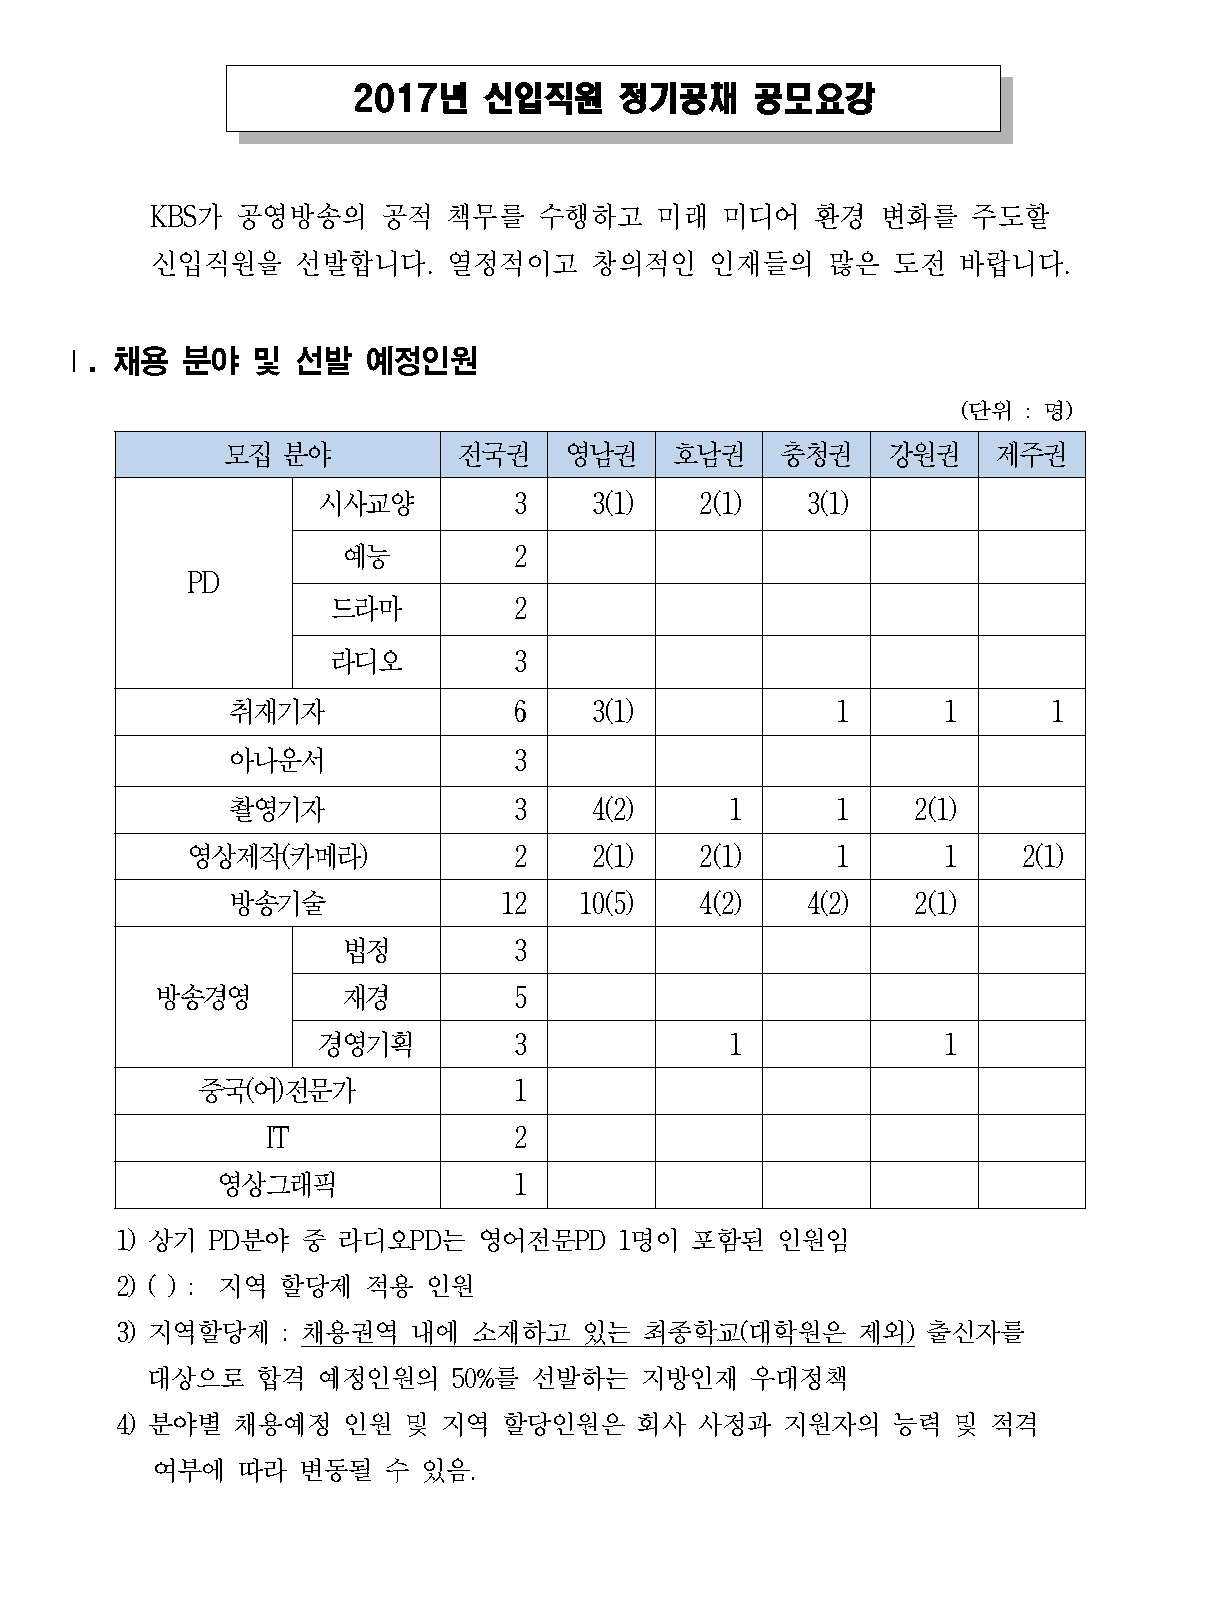 1. 2017년 신입 정기공채 공모요강_페이지_1.png